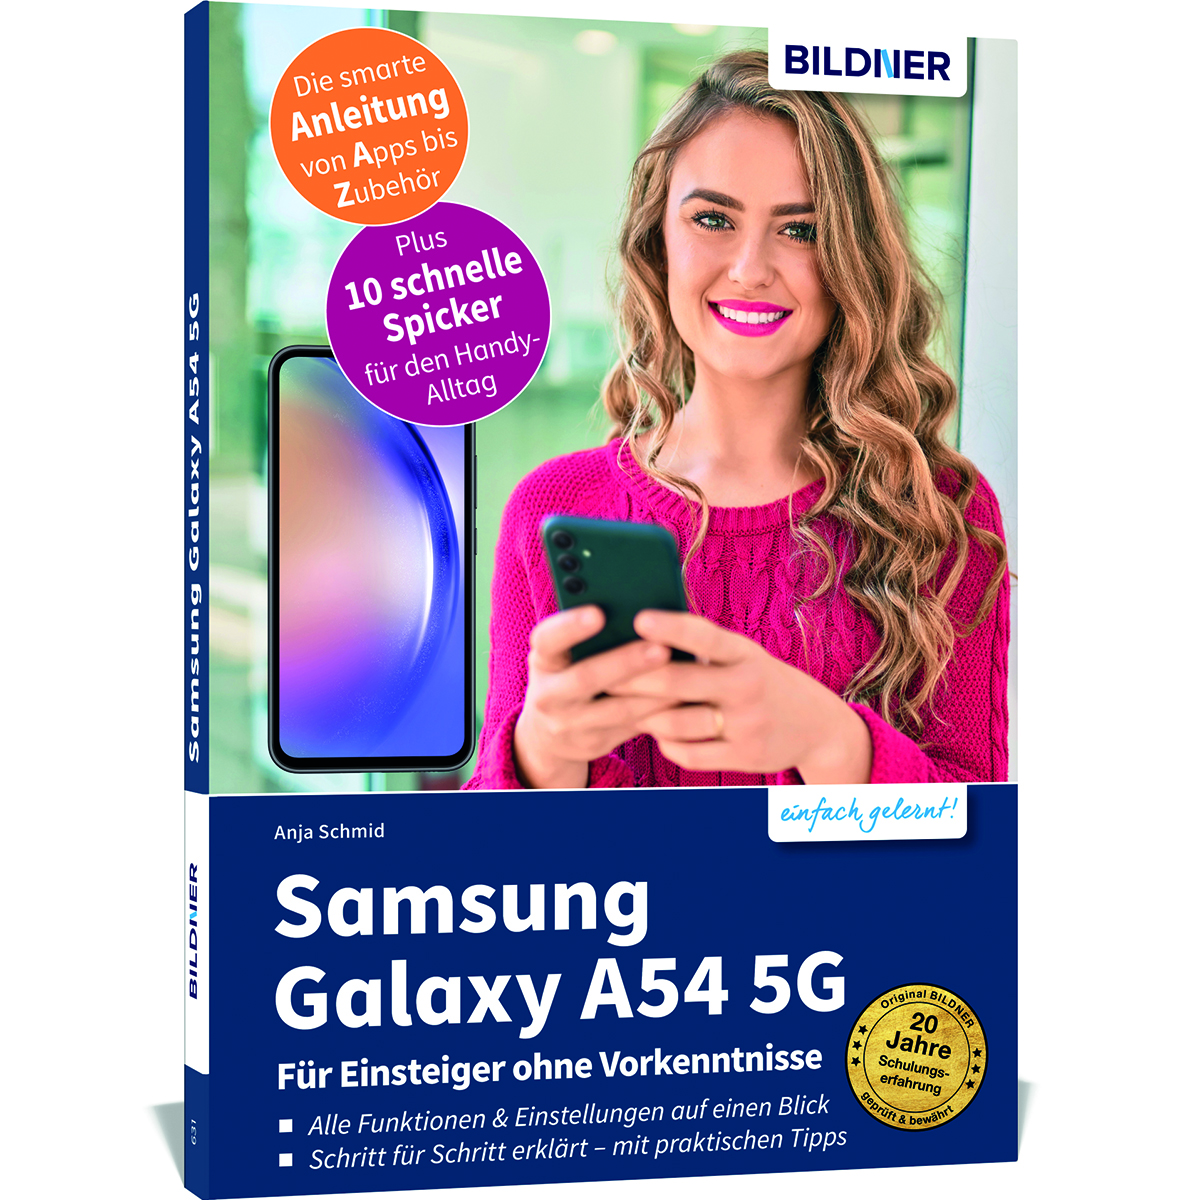 Samsung Galaxy A54 - Für Einsteiger ohne Vorkenntnisse